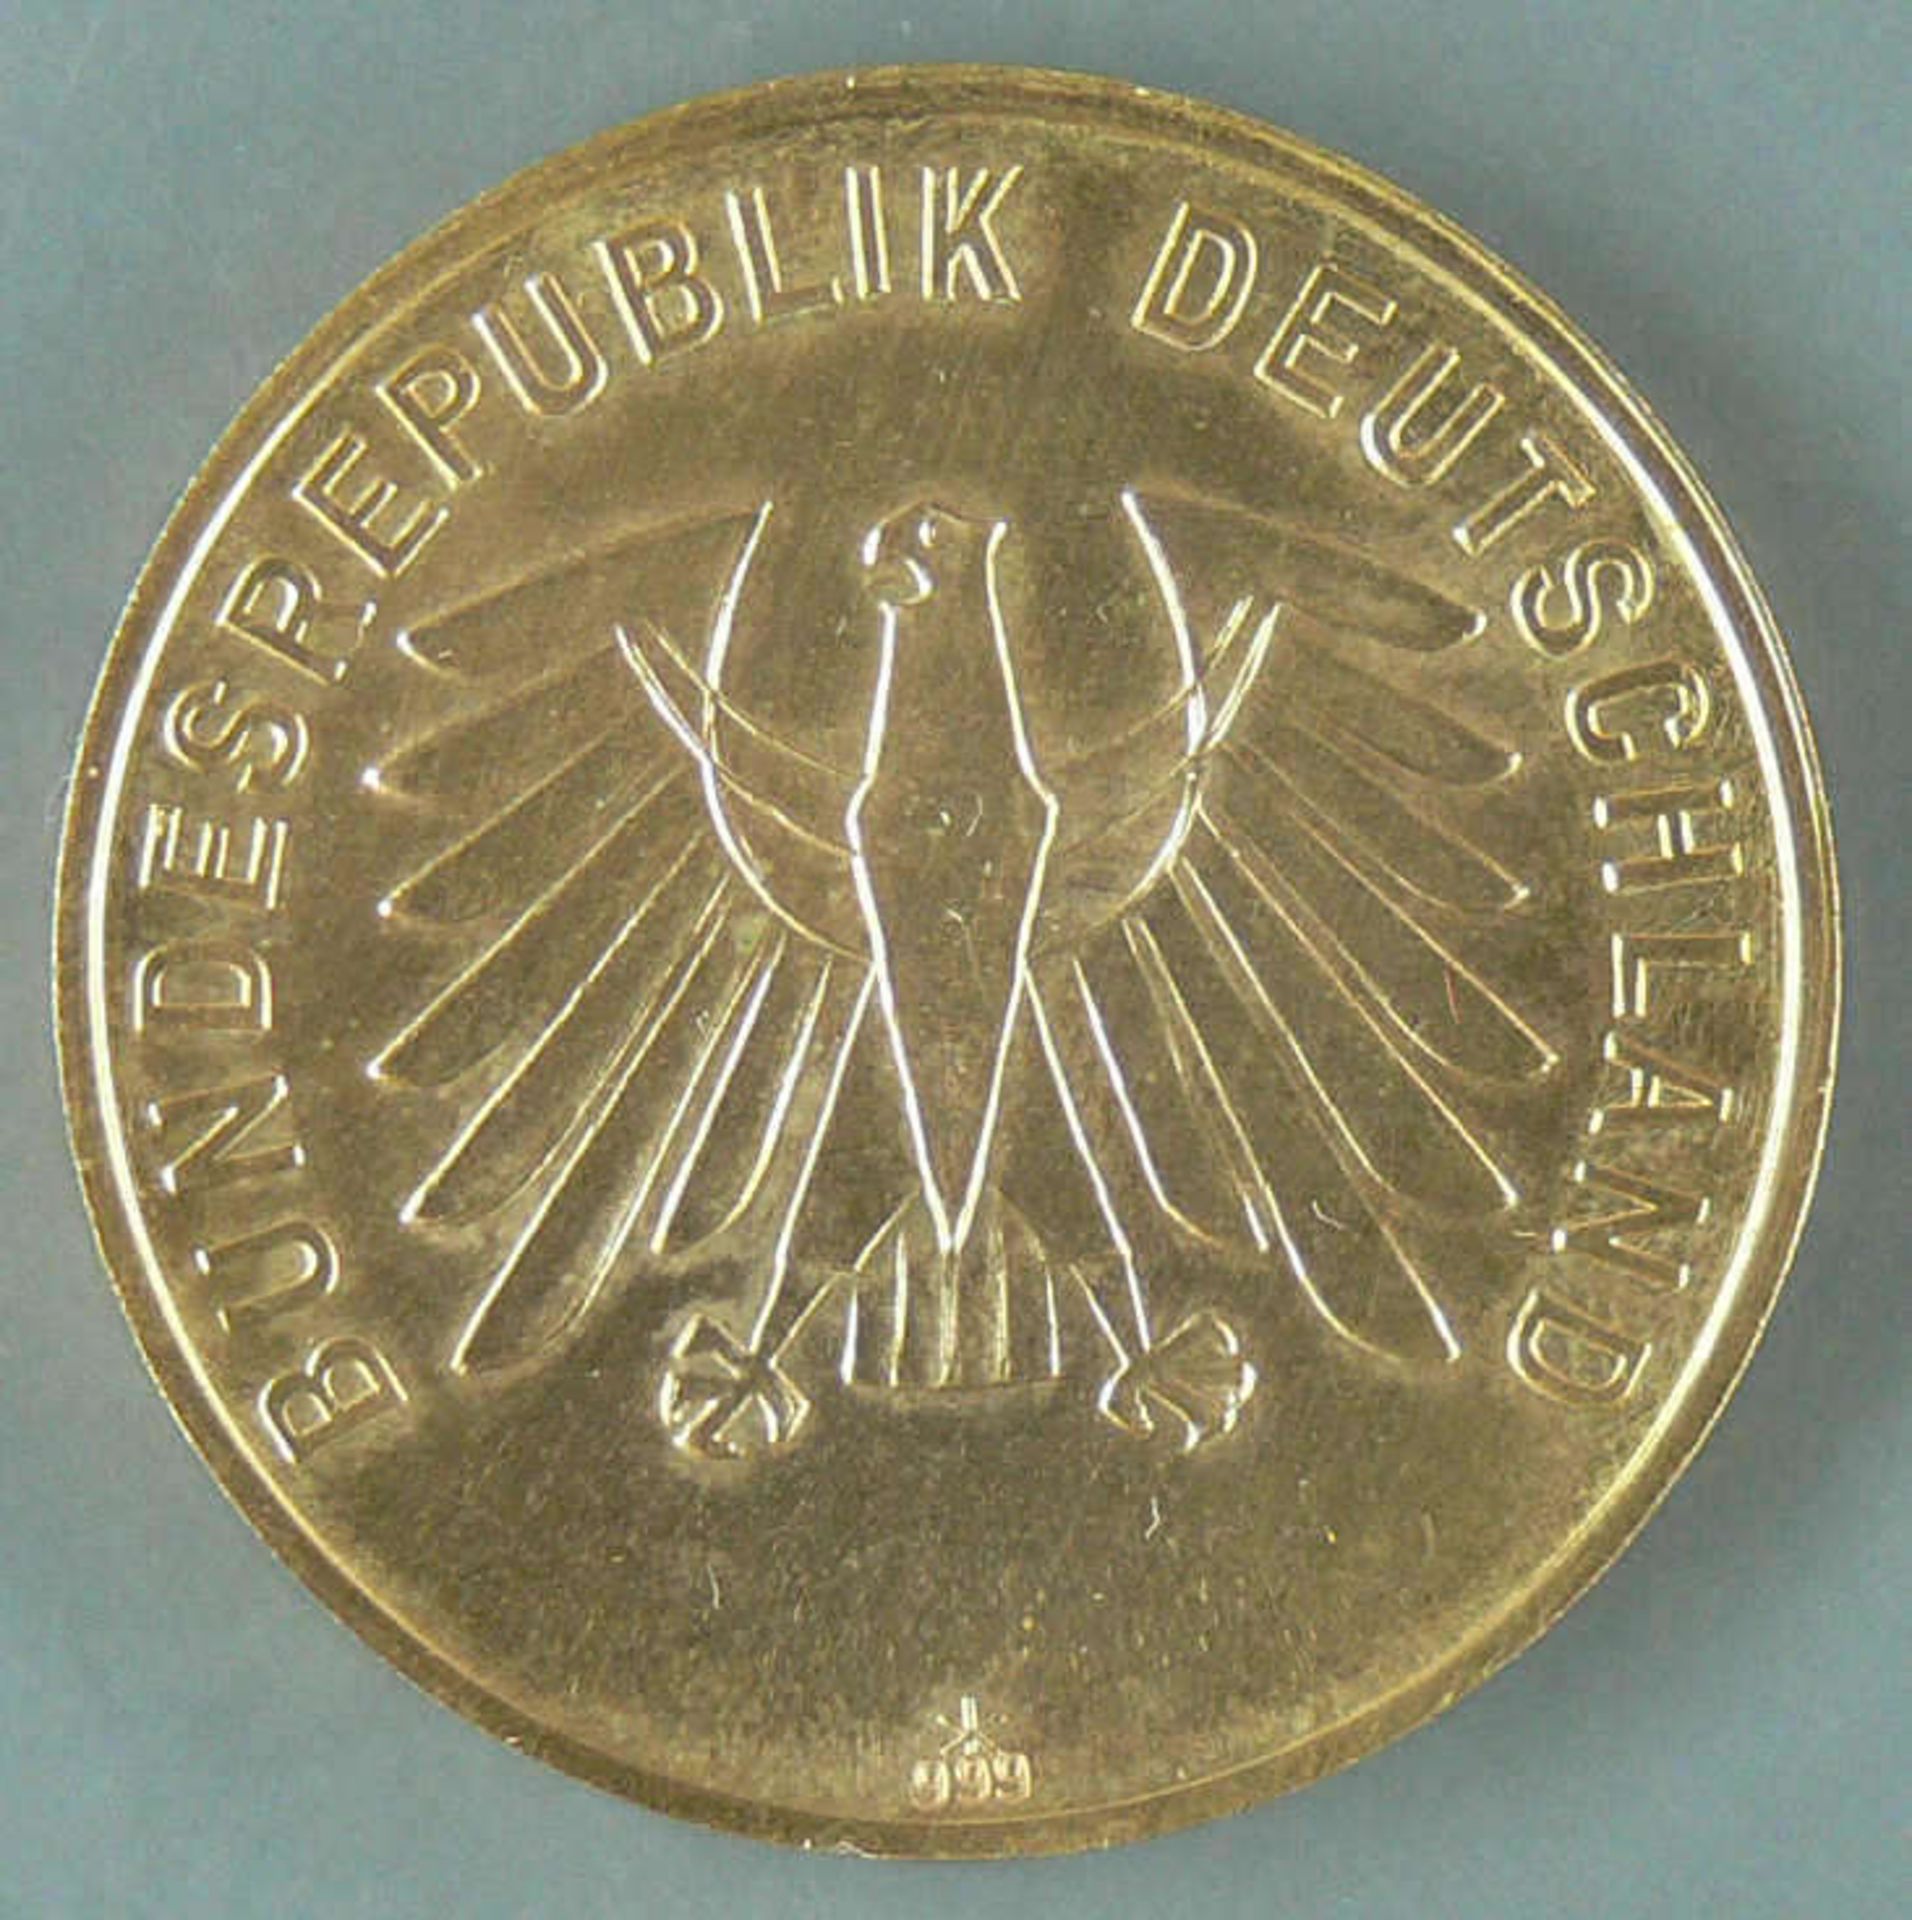 Medaille "Deutscher Ringerbund e.V. 26.10.91". Durchmesser: ca. 35,2 mm. Gewicht: ca. 31.1 g. Silber - Bild 2 aus 2